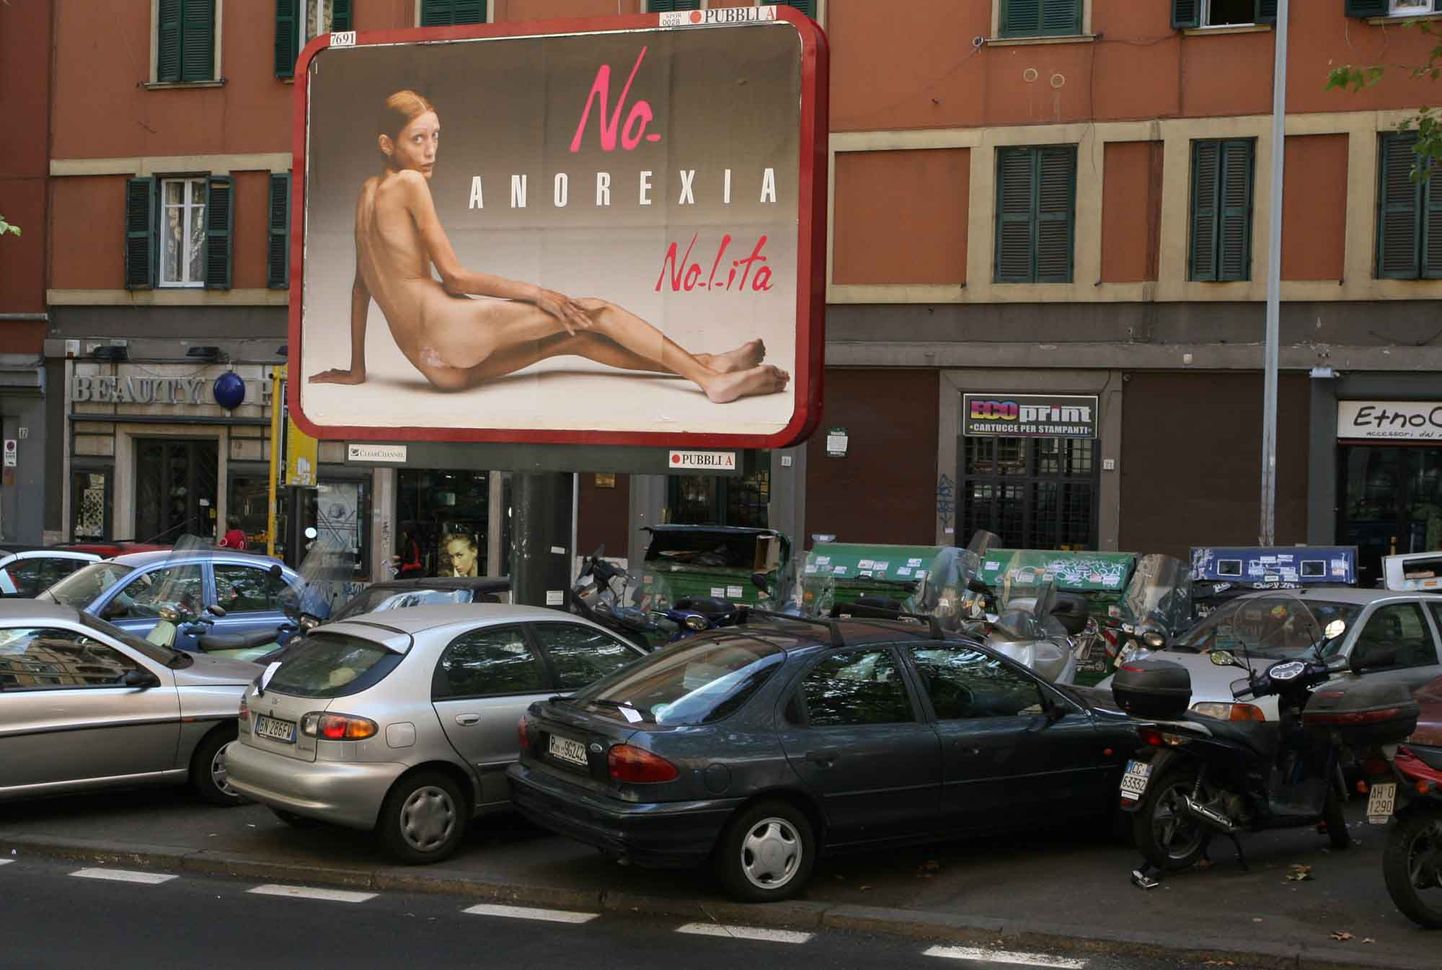 Оливеро Тоскани выбрал лицом бренда «Nolita» женщину-анорексика.Иллюстративный снимок.